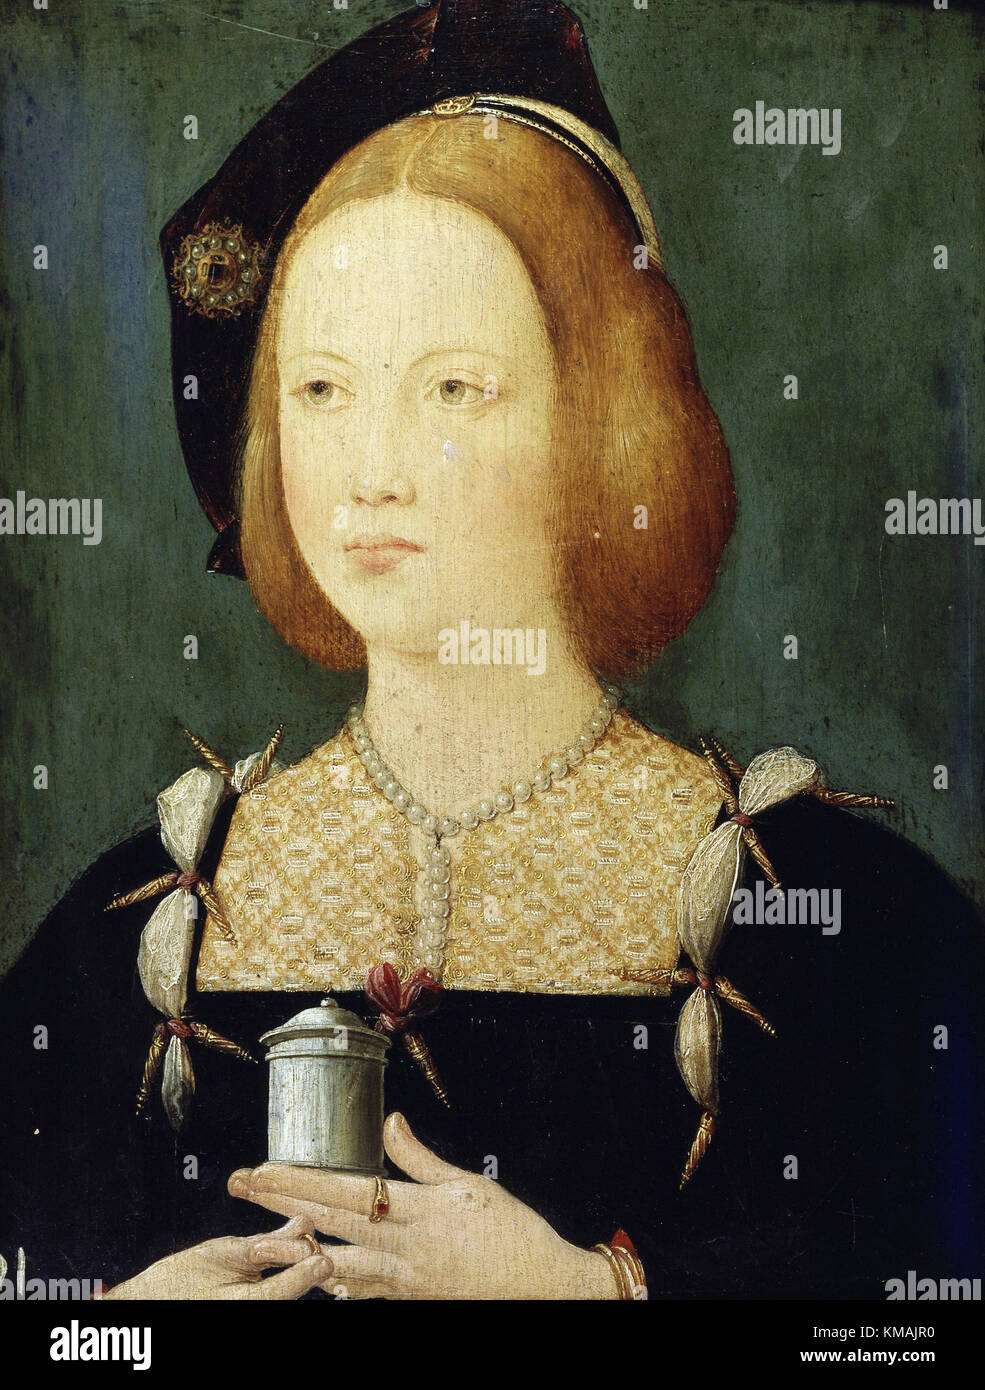 Anonyme - Portrait de Mary d'Angleterre, troisième épouse de Louis XII, roi de France - 16e siècle Banque D'Images